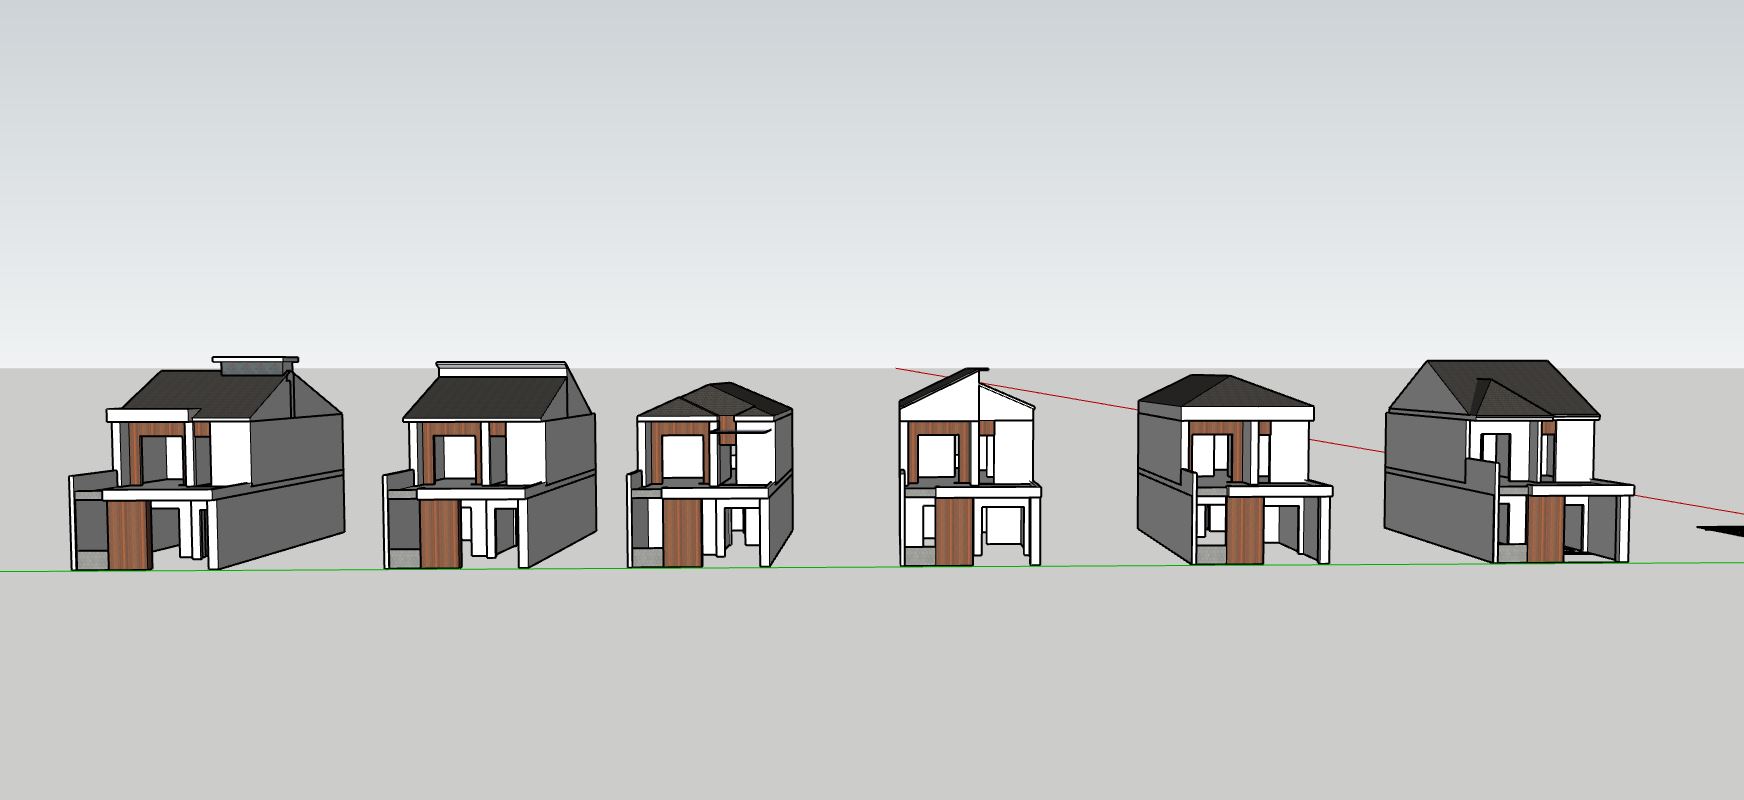 nhà phố 2 tầng,file sketchup nhà phố 2 tầng,mẫu sketchup nhà phố 2 tầng,thiết kế nhà phố 2 tầng